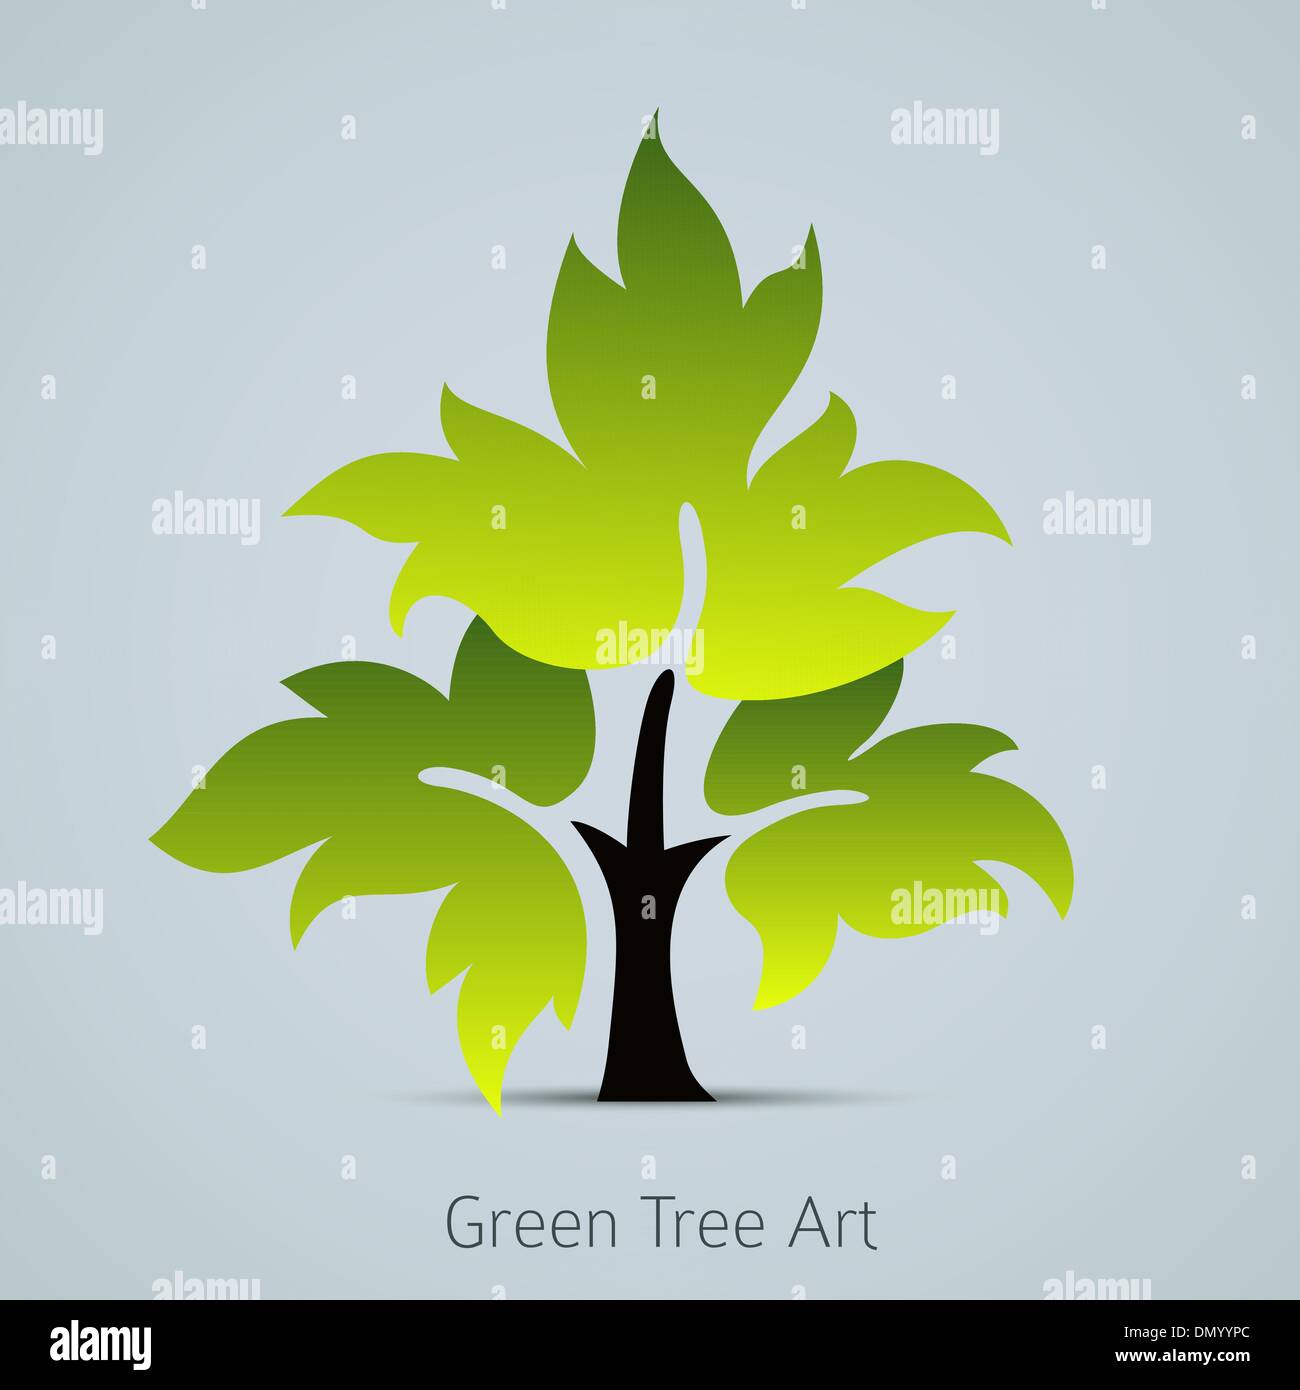 Baum Vektor Icon mit grünen Blättern Stock Vektor